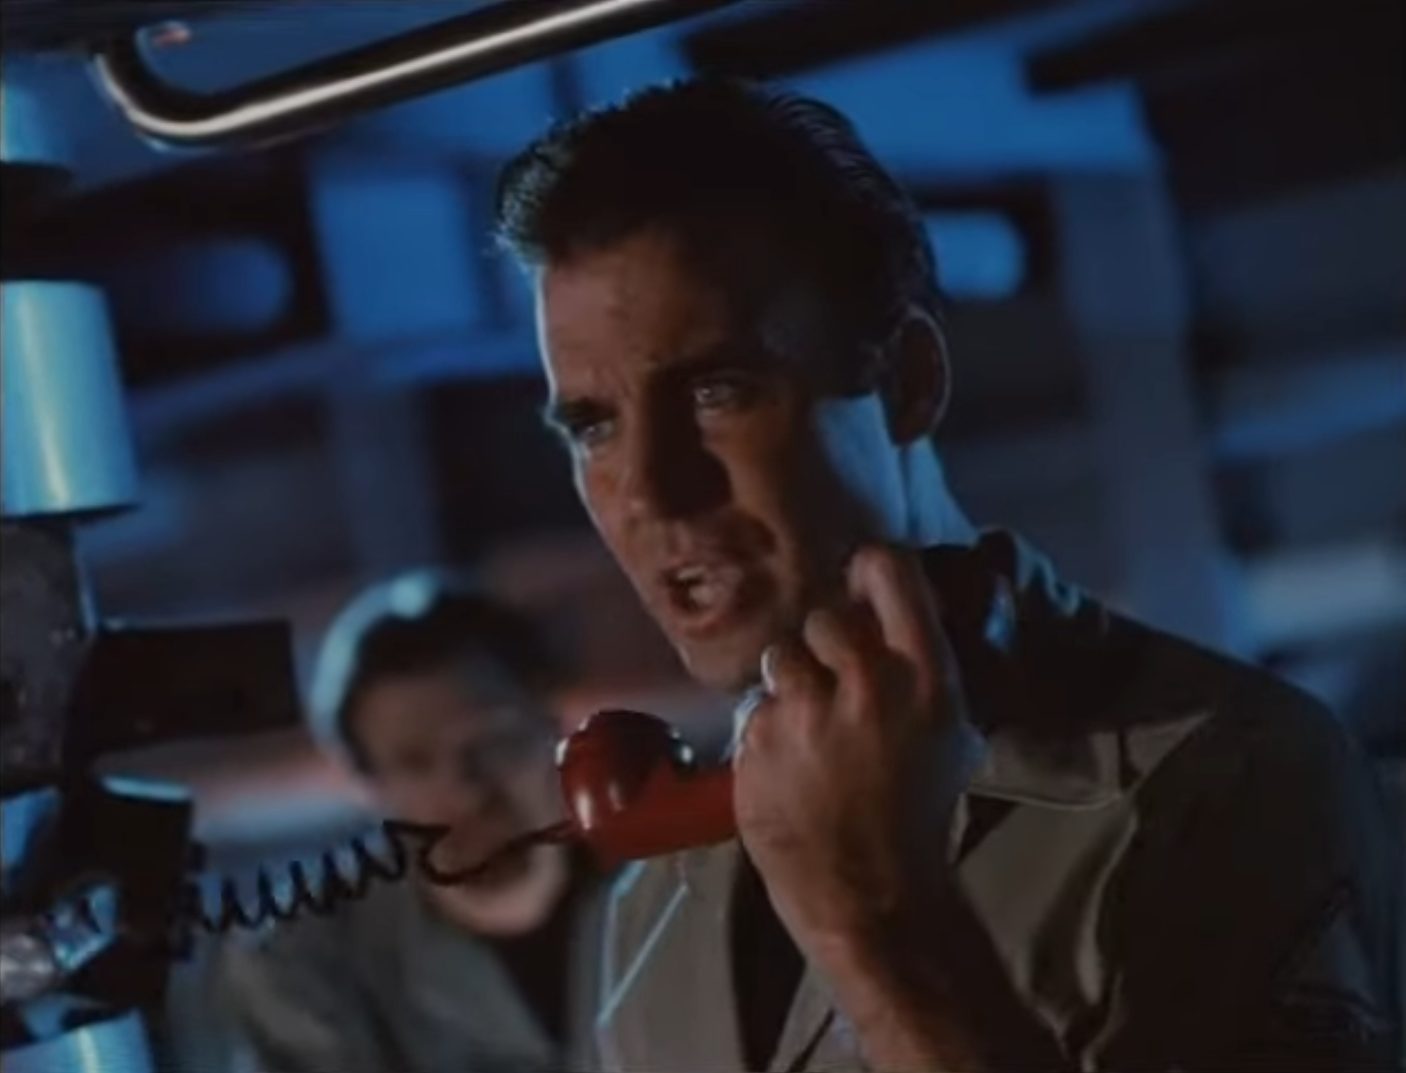 Nahaufnahme von Jeff Fahey als U-Boot-Kommandant Deakins in der spärlich ausgeleuchteten Zentrale; mit konzentriert-bestimmtem Blick spricht er in den Bordfunkhörer.